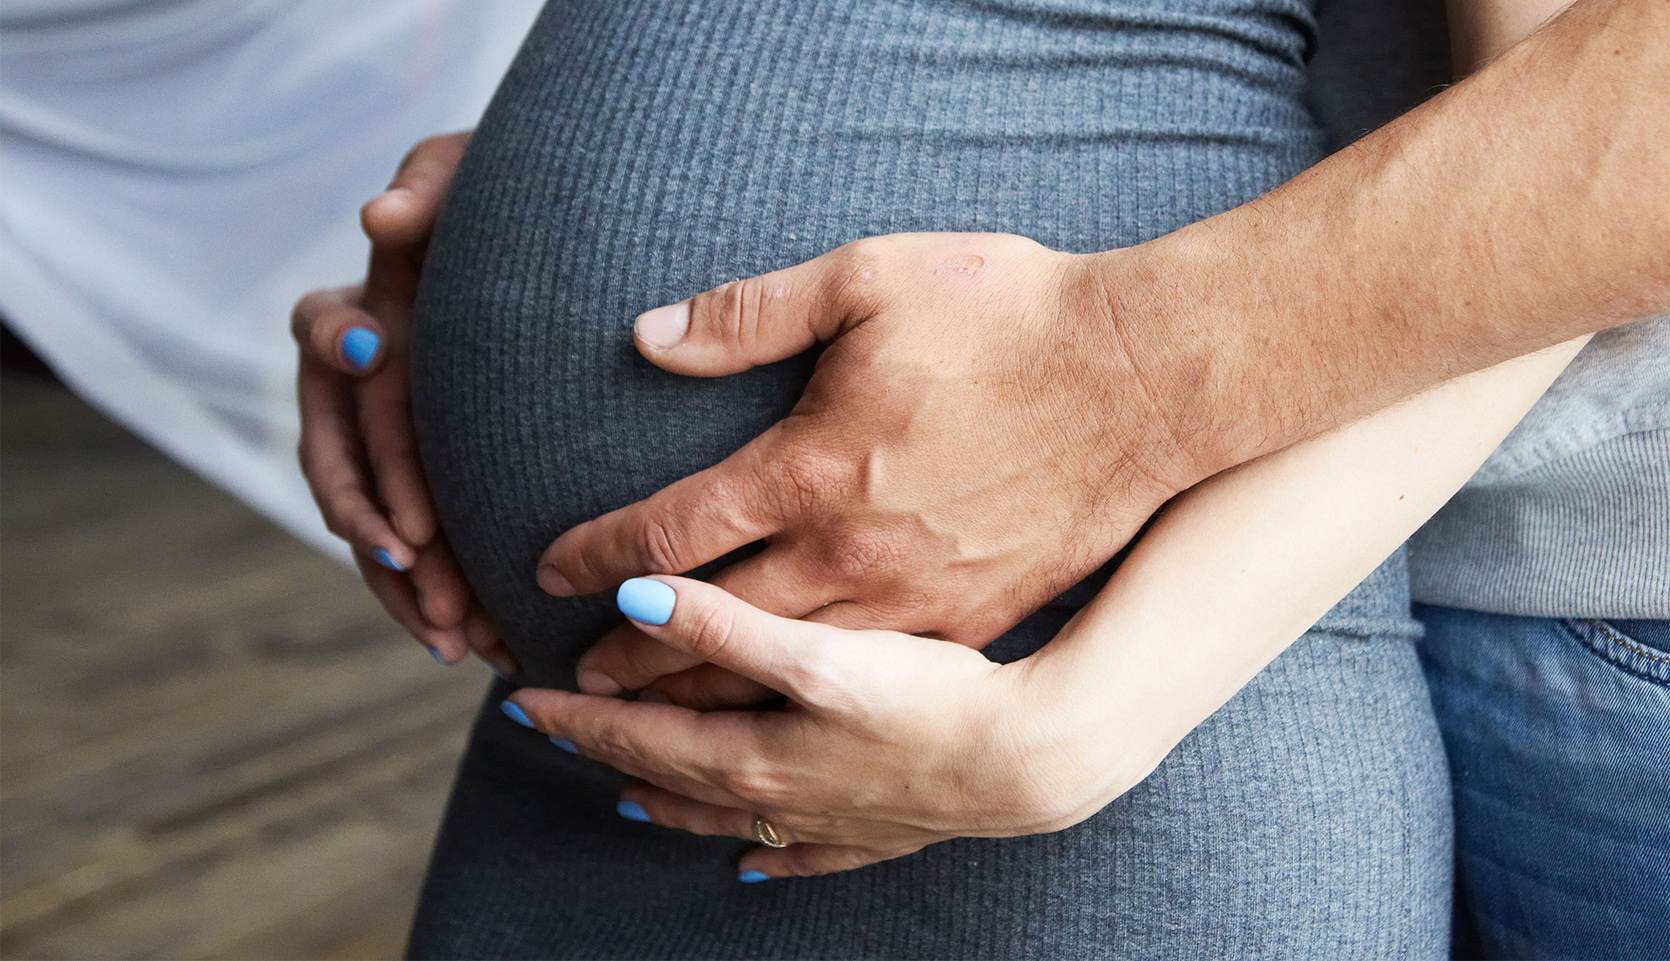 Sztuczne paznokcie a ciąża - czy w ciąży można robić hybrydy, żele i akryl? / istock